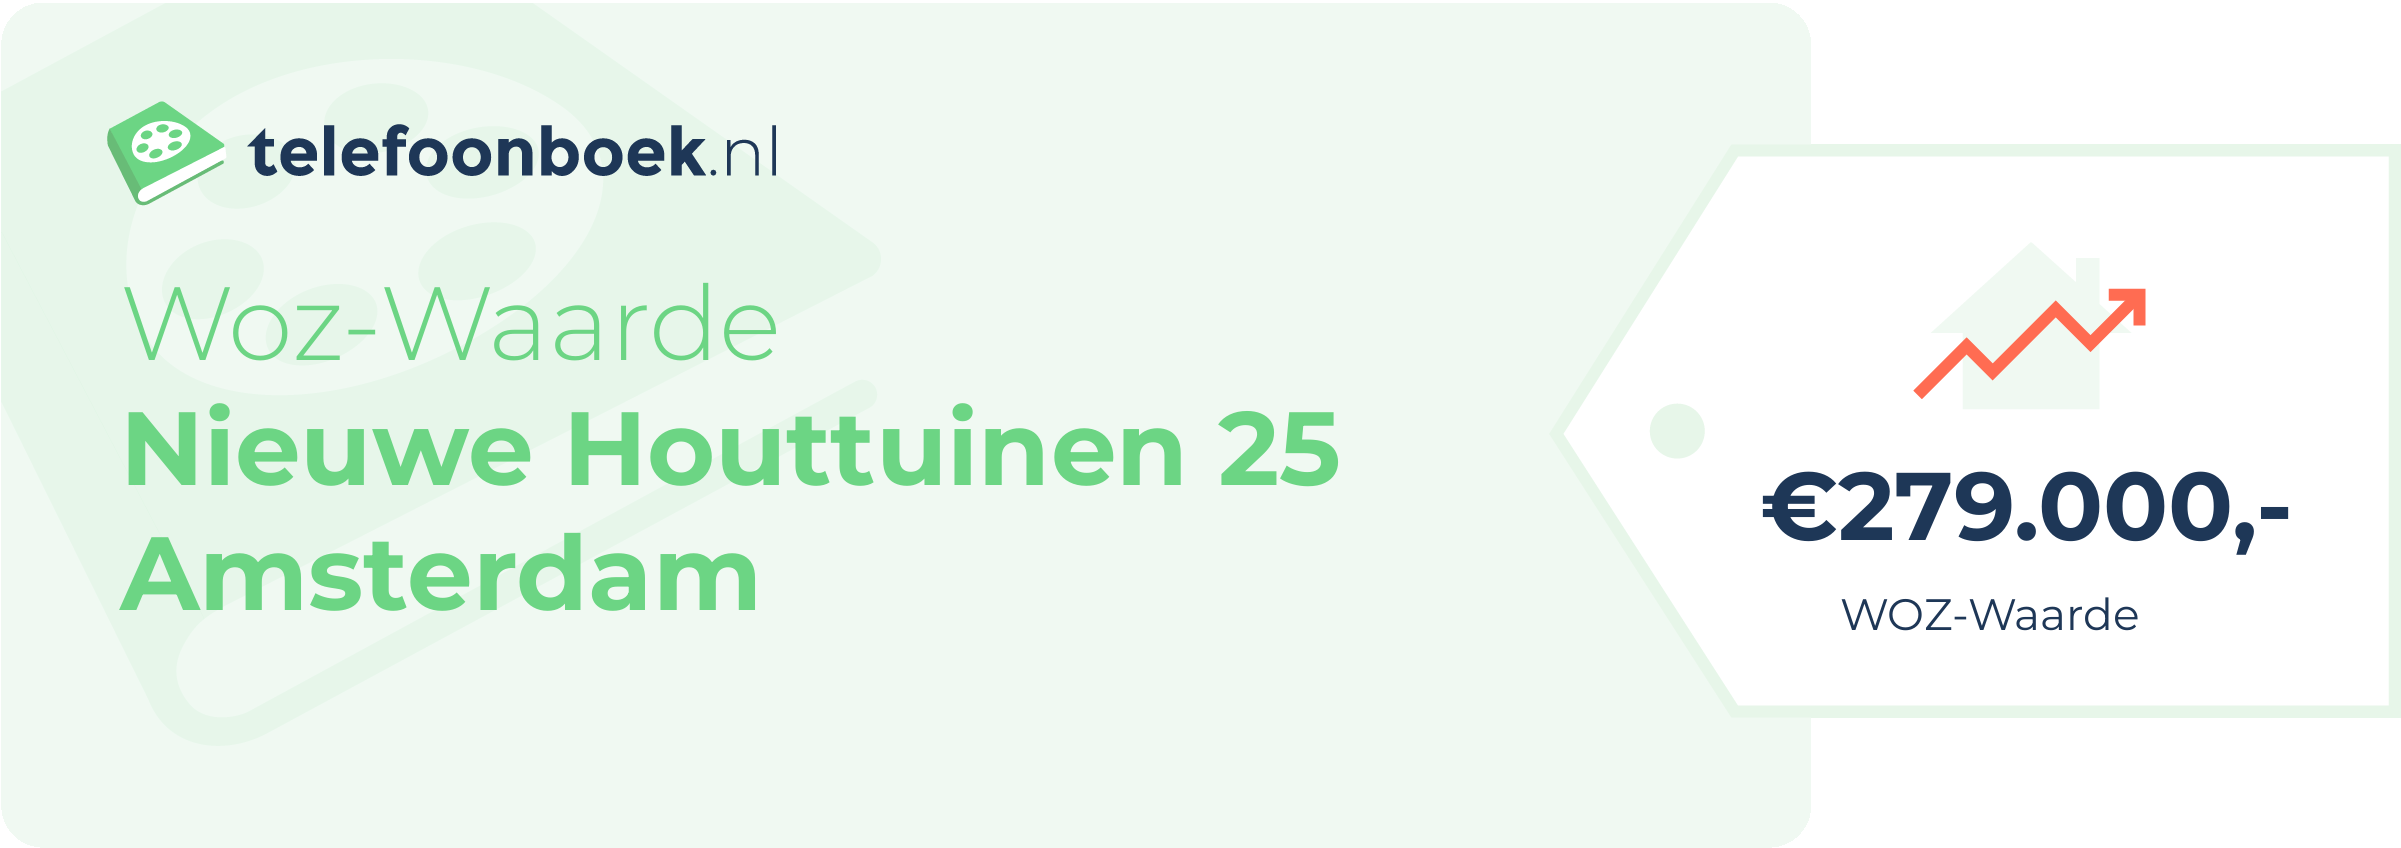 WOZ-waarde Nieuwe Houttuinen 25 Amsterdam